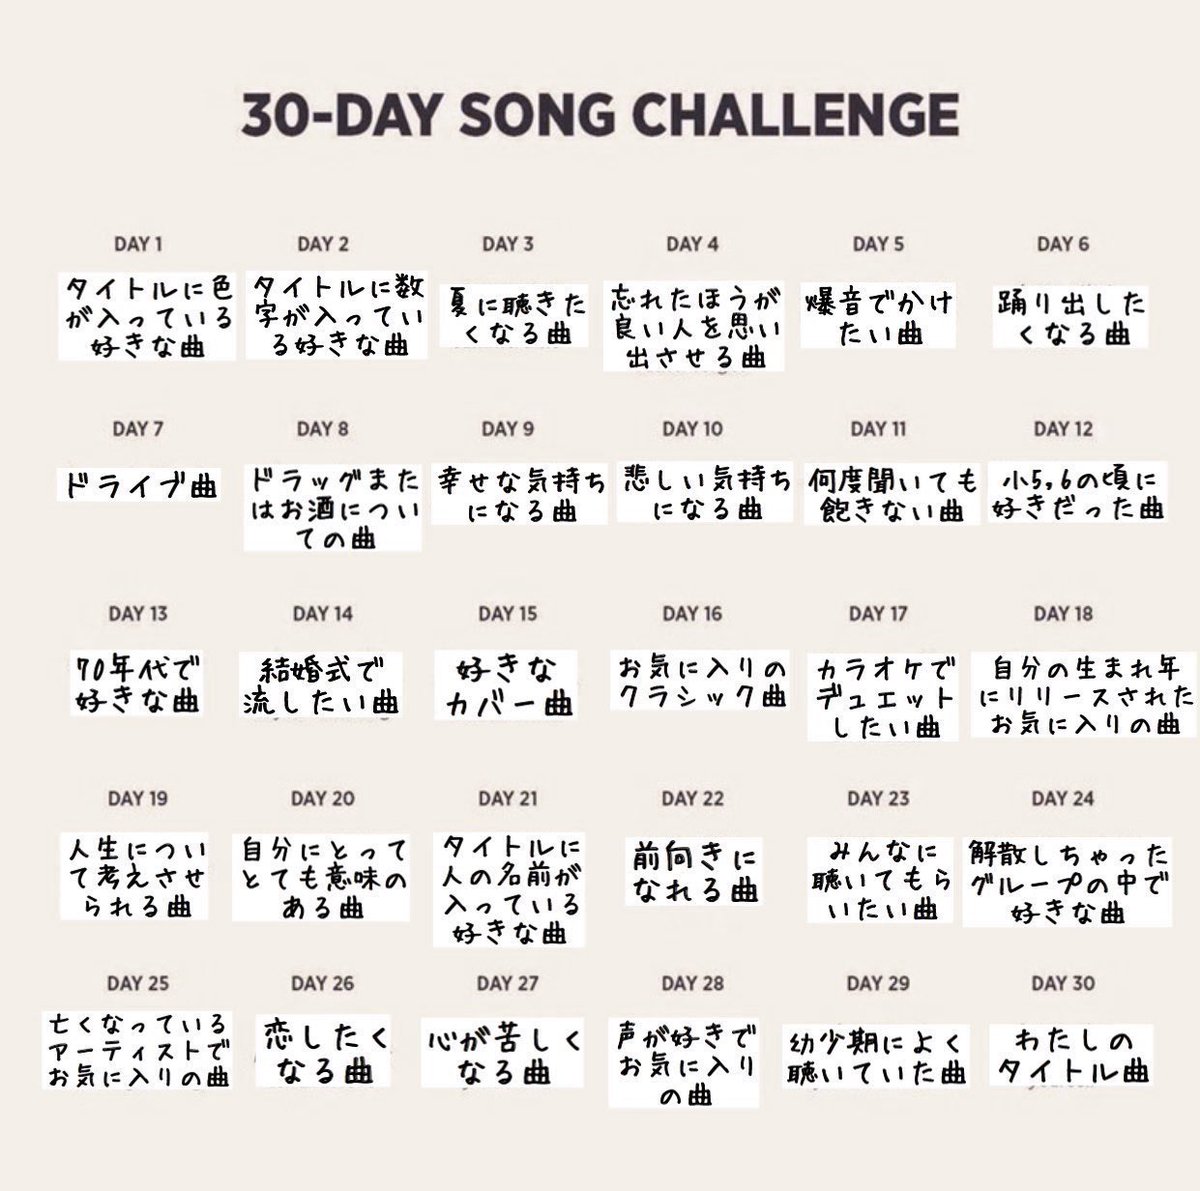 Masanoritakano 高野雅典 On Twitter 30 Day Song Challenge Day